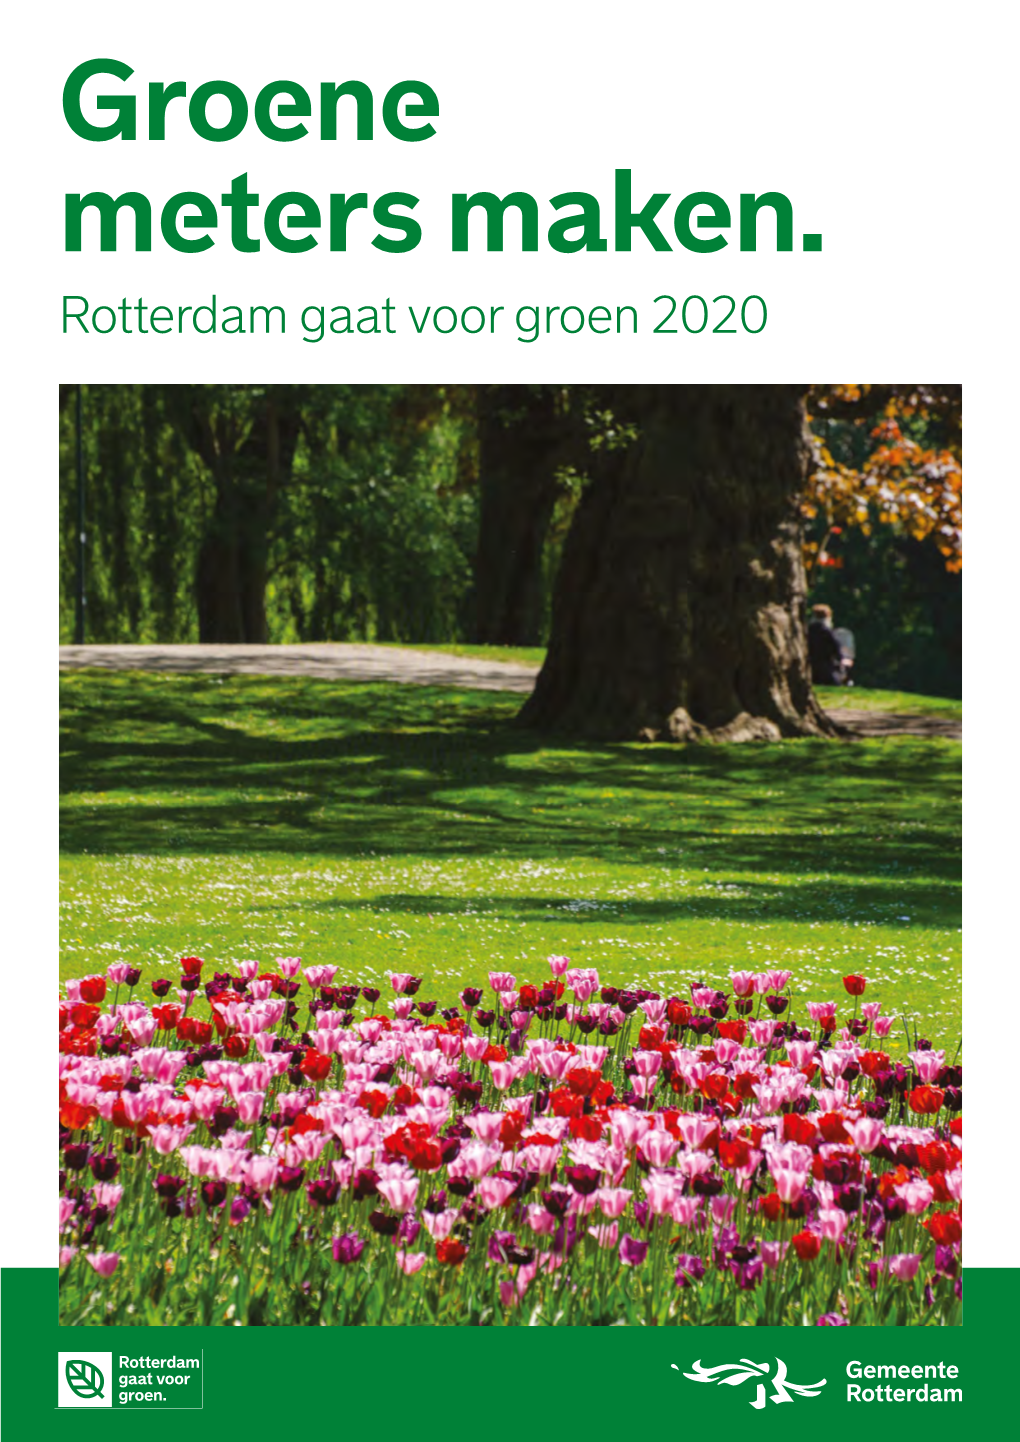 Rotterdam Gaat Voor Groen 2020. Groene Meters Maken